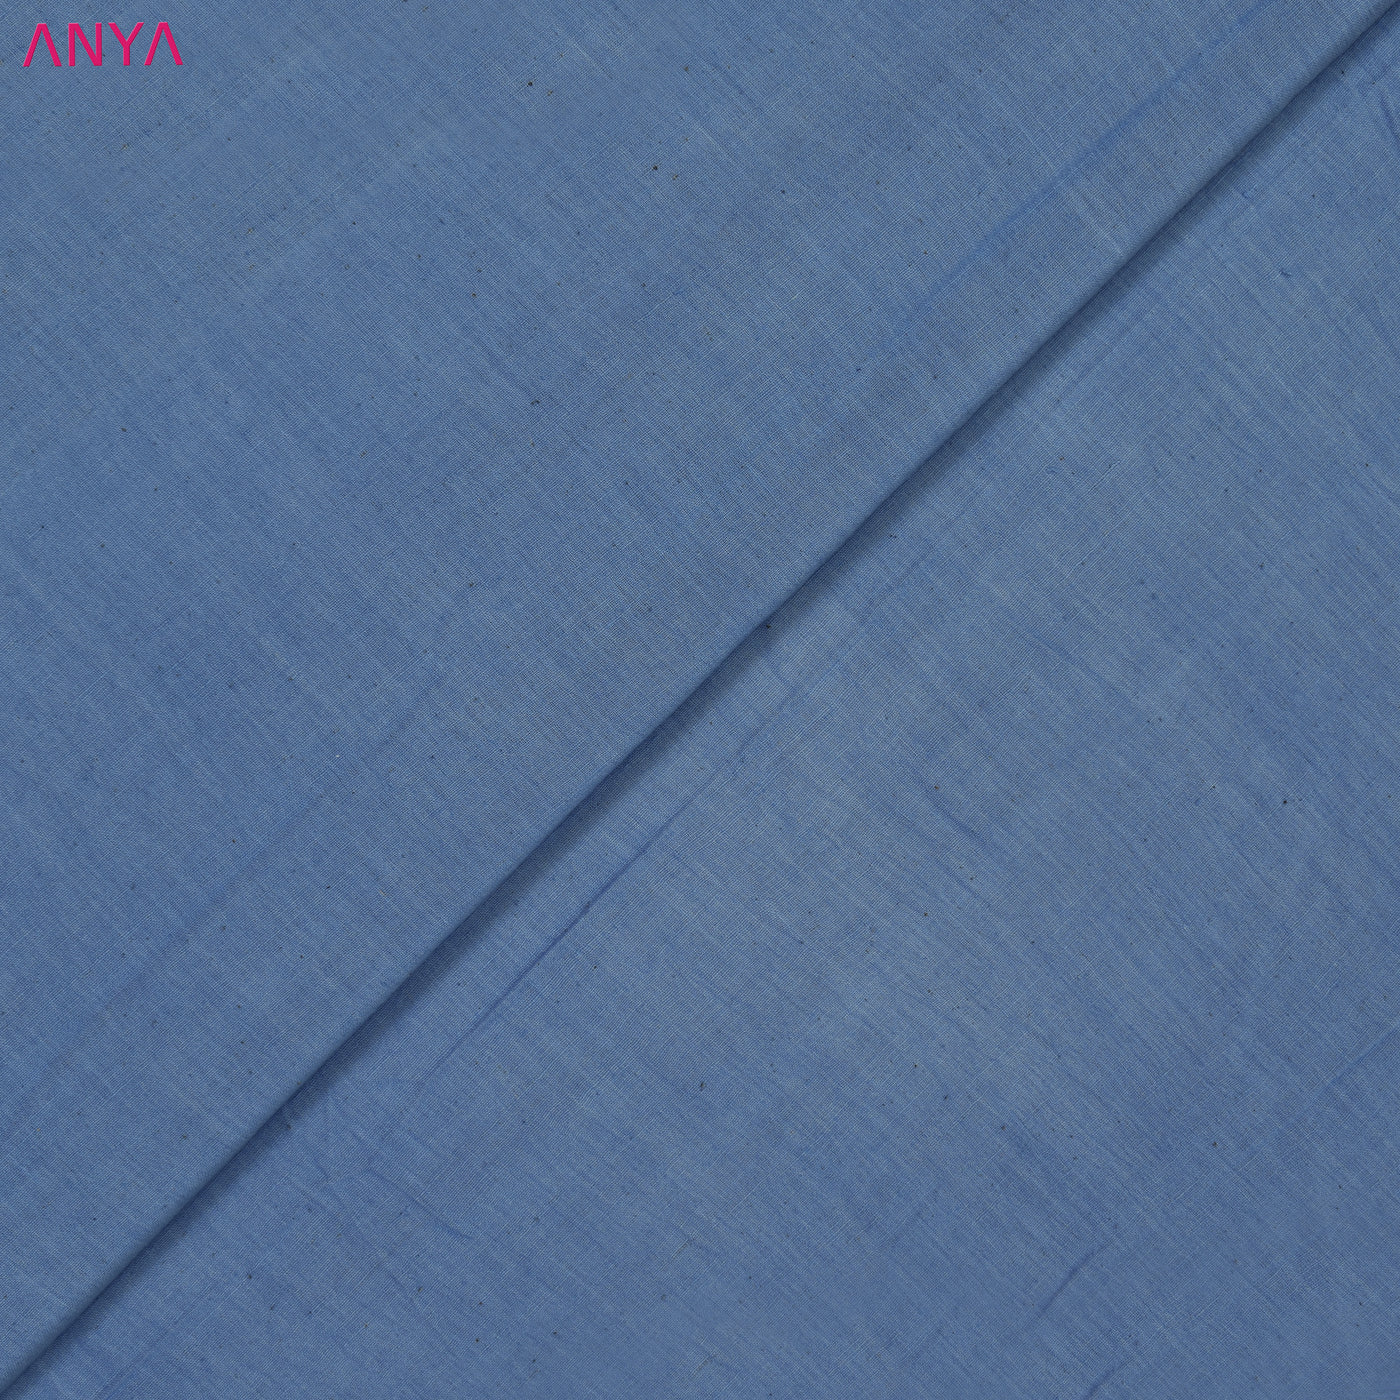 Blue Cotton Fabric